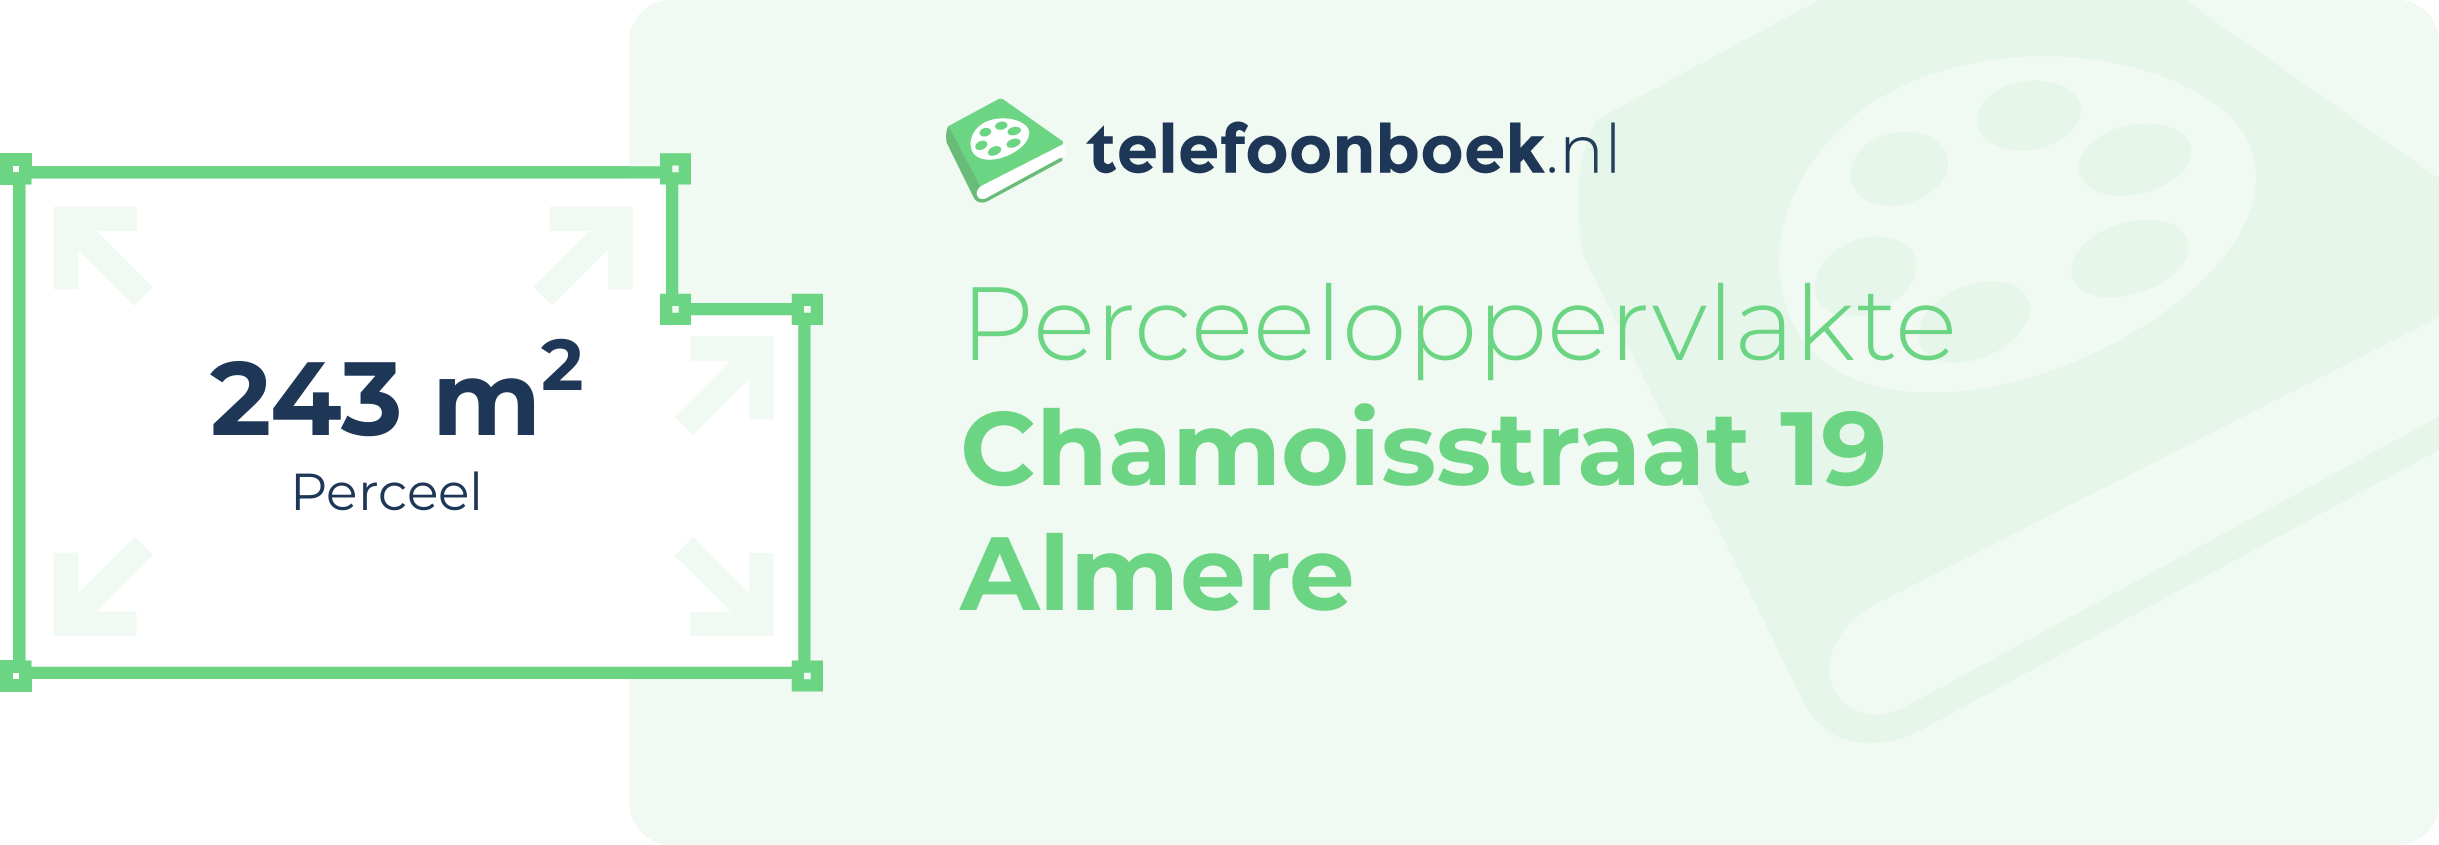 Perceeloppervlakte Chamoisstraat 19 Almere